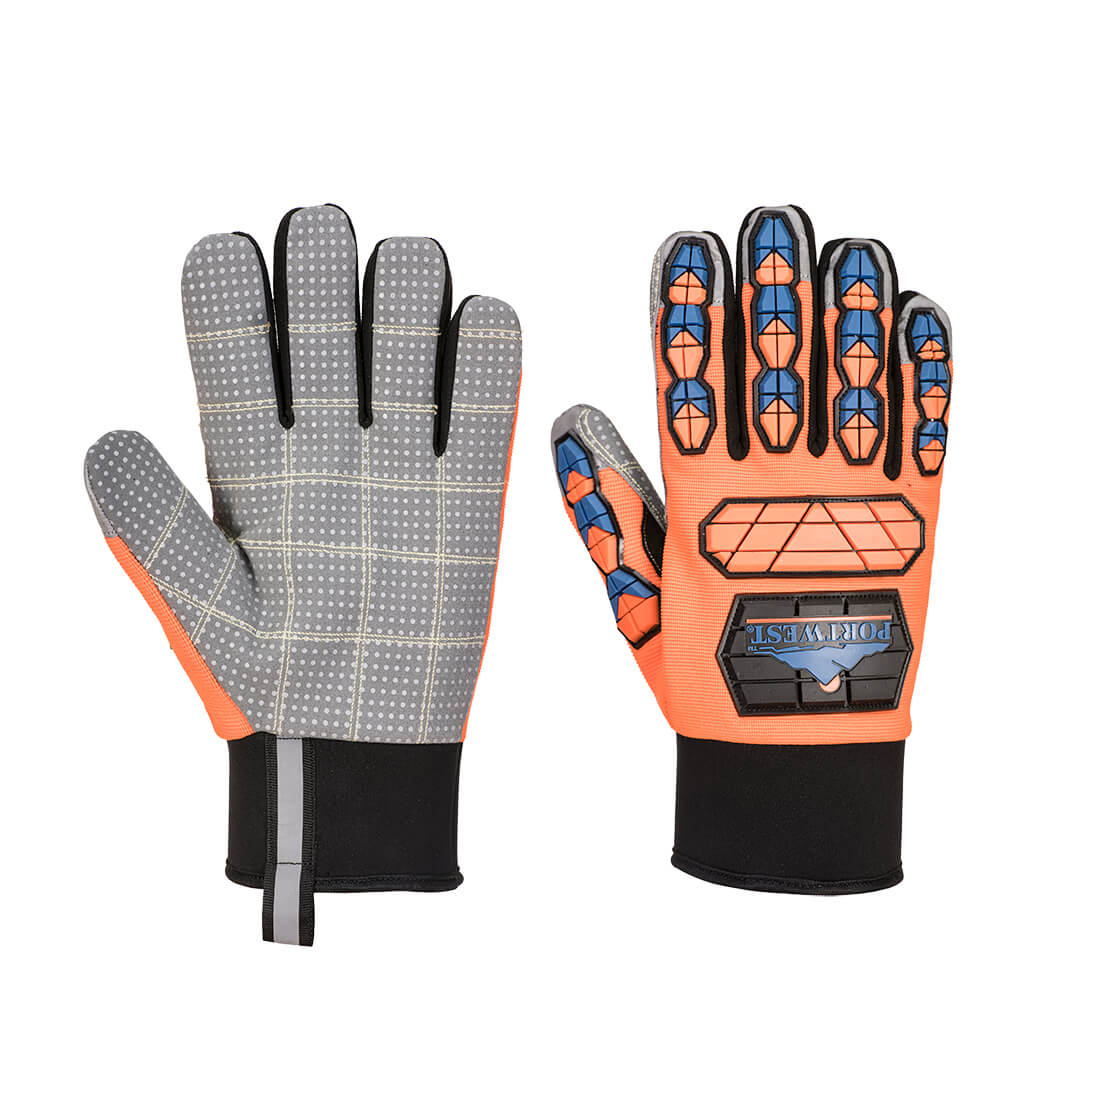 A726 – Aqua-Seal Pro Glove - SRV Damage Preventions